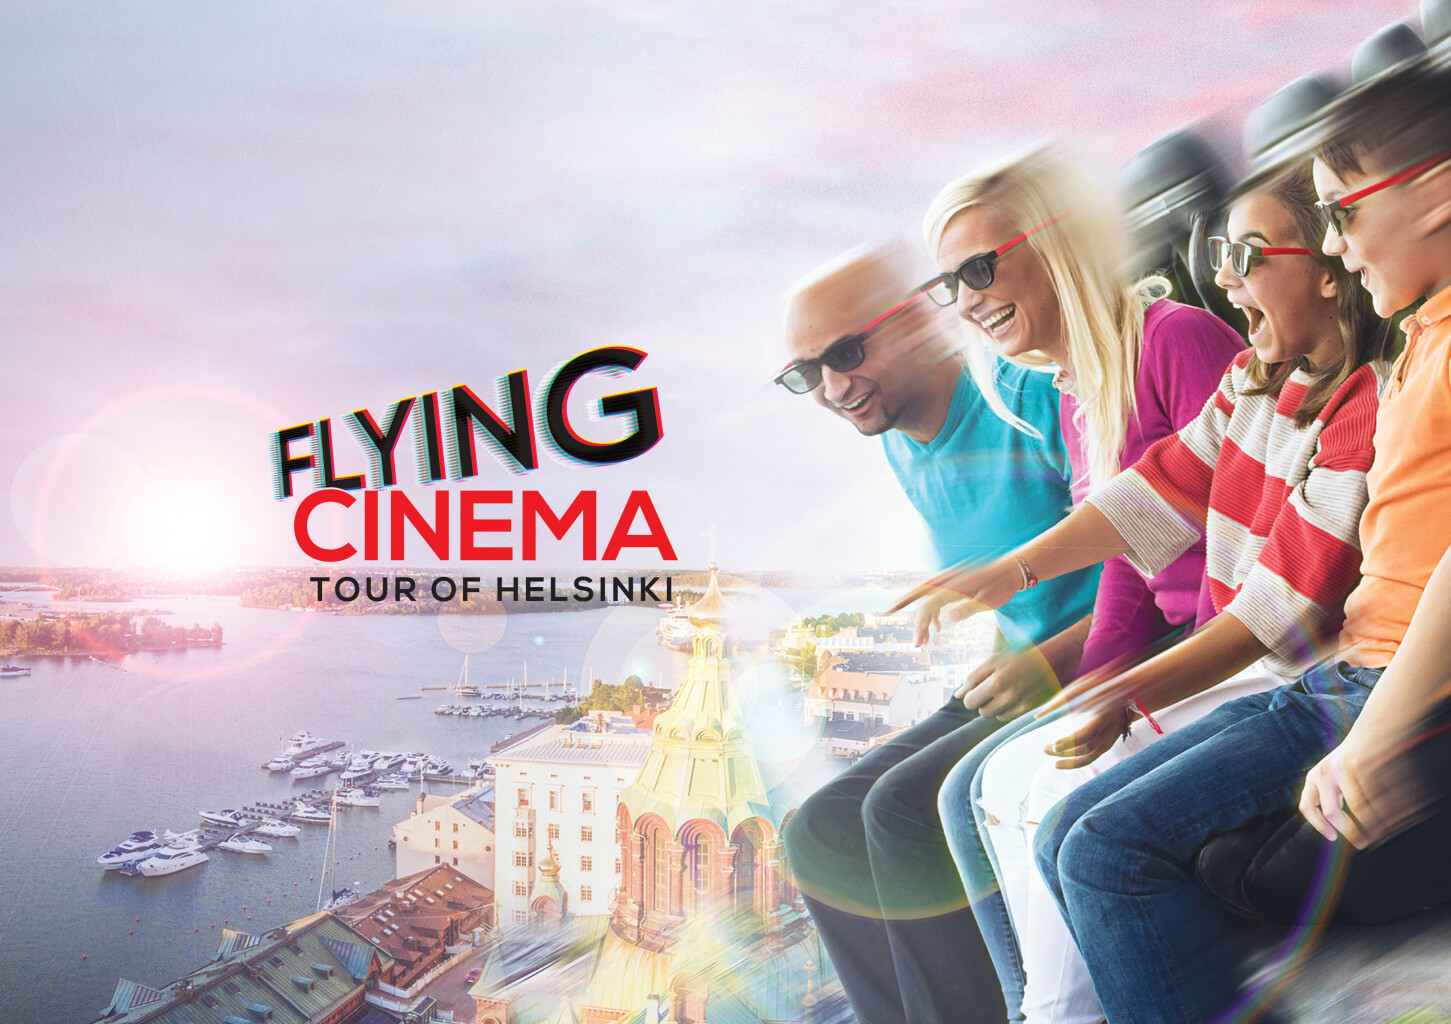 Flying cinema - Virtuaalielokuvaelämys perheelle